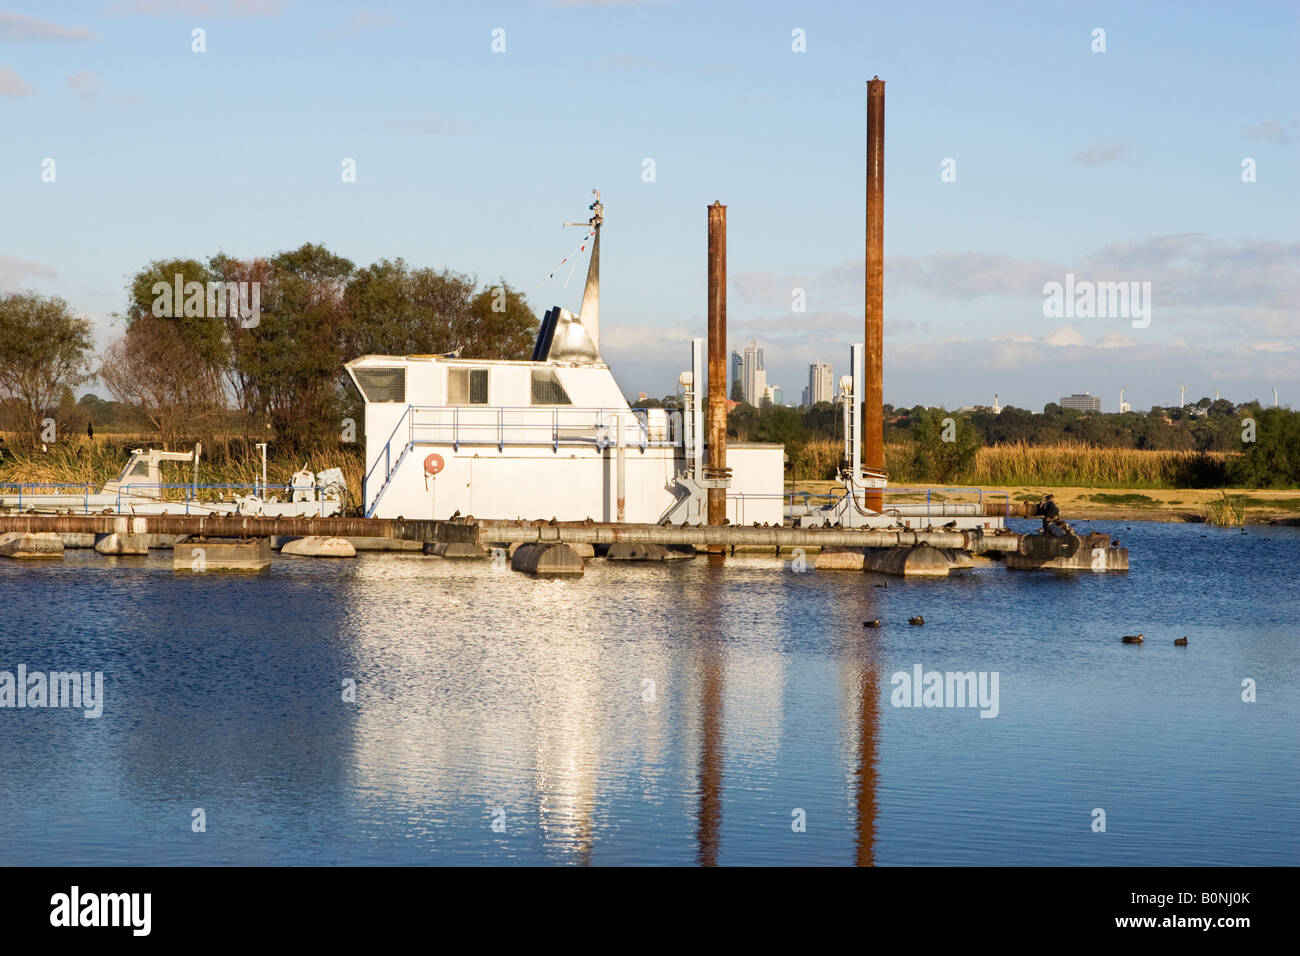 Un rimorchiatore di alta tecnologia per la rimozione di limo al Lago di pastore, Perth. Perth la grattacieli si vede dietro la draga Foto Stock